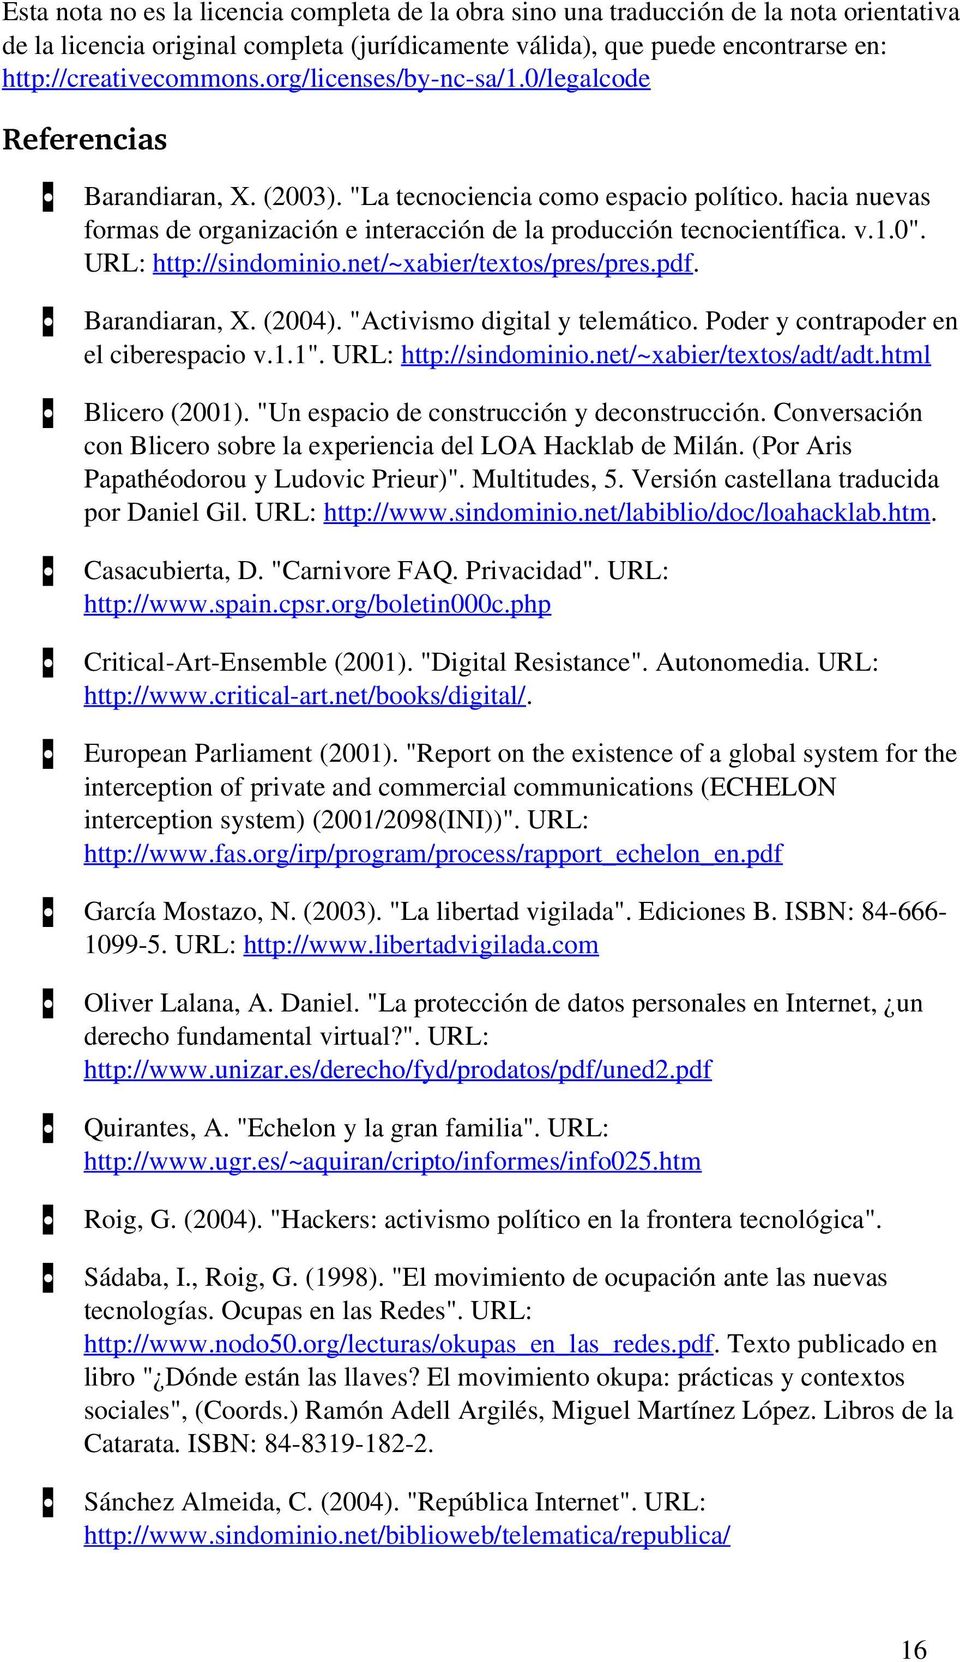 URL: http://sindominio.net/~xabier/textos/pres/pres.pdf. Barandiaran, X. (2004). "Activismo digital y telemático. Poder y contrapoder en el ciberespacio v.1.1". URL: http://sindominio.